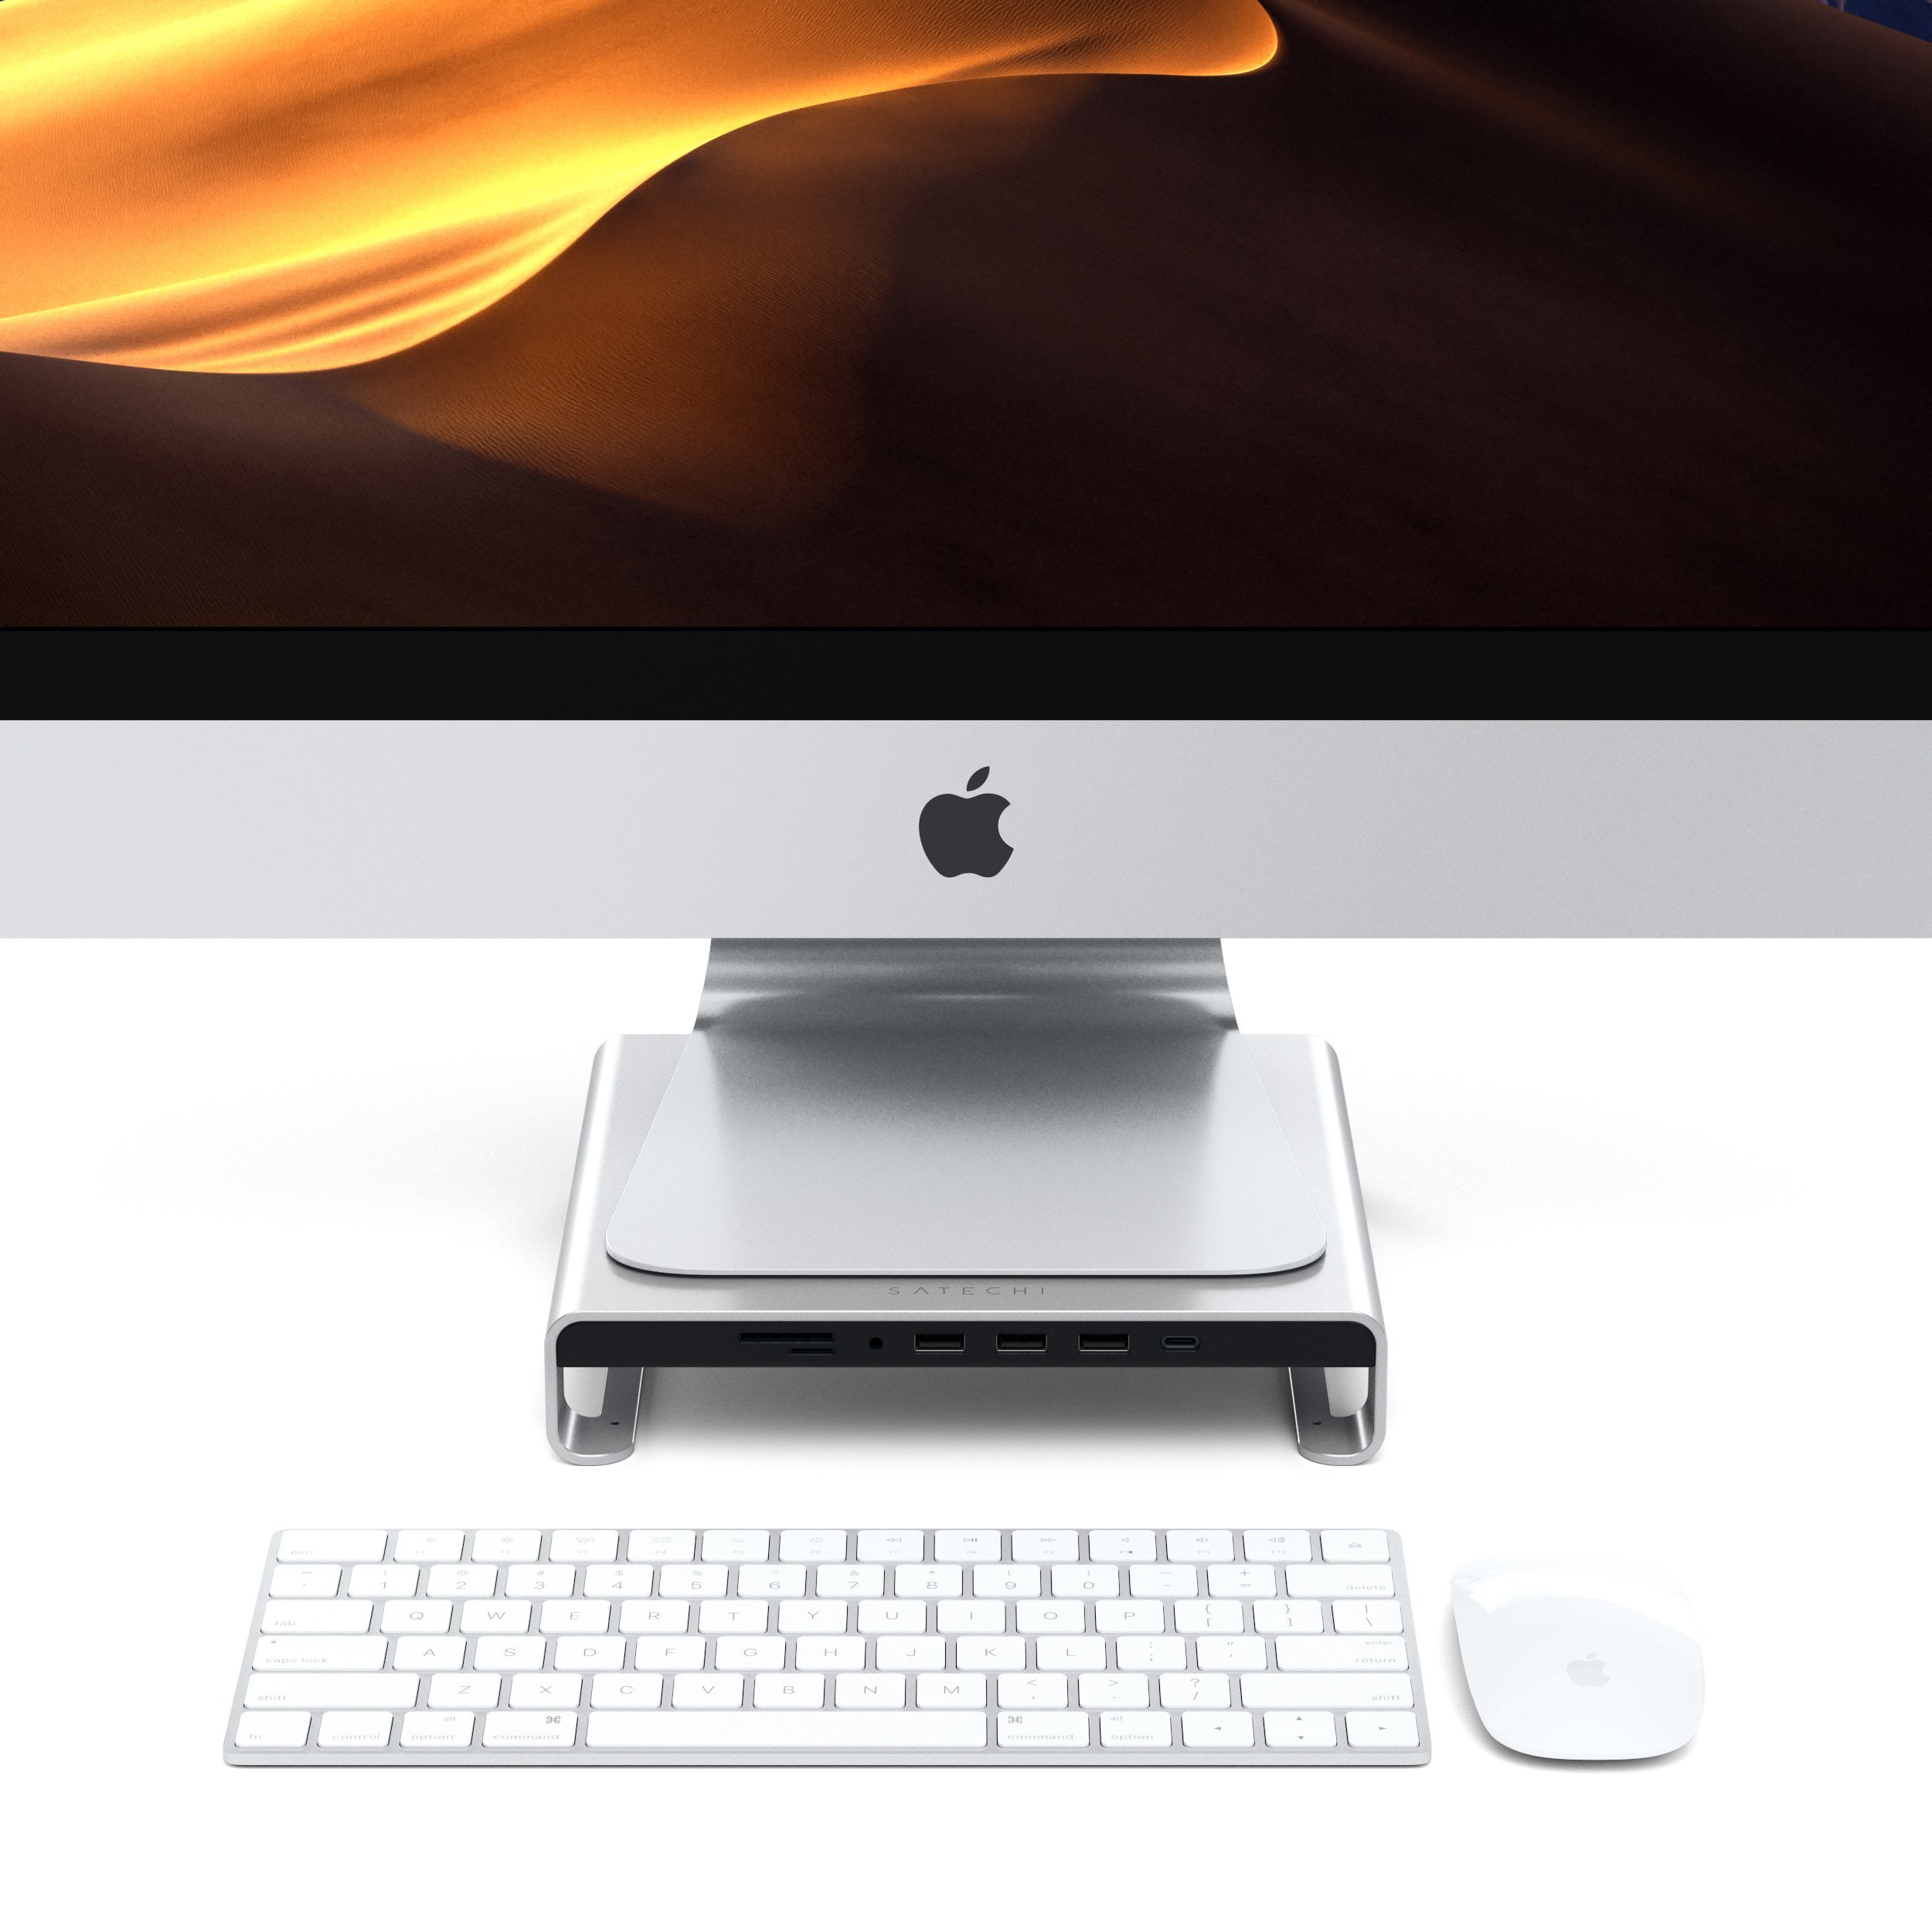 Satechi、iMac用のUSB-Cスタンドハブ｢Type-C Aluminum Monitor Stand Hub for iMac｣を販売開始 − 発売記念で500円オフに